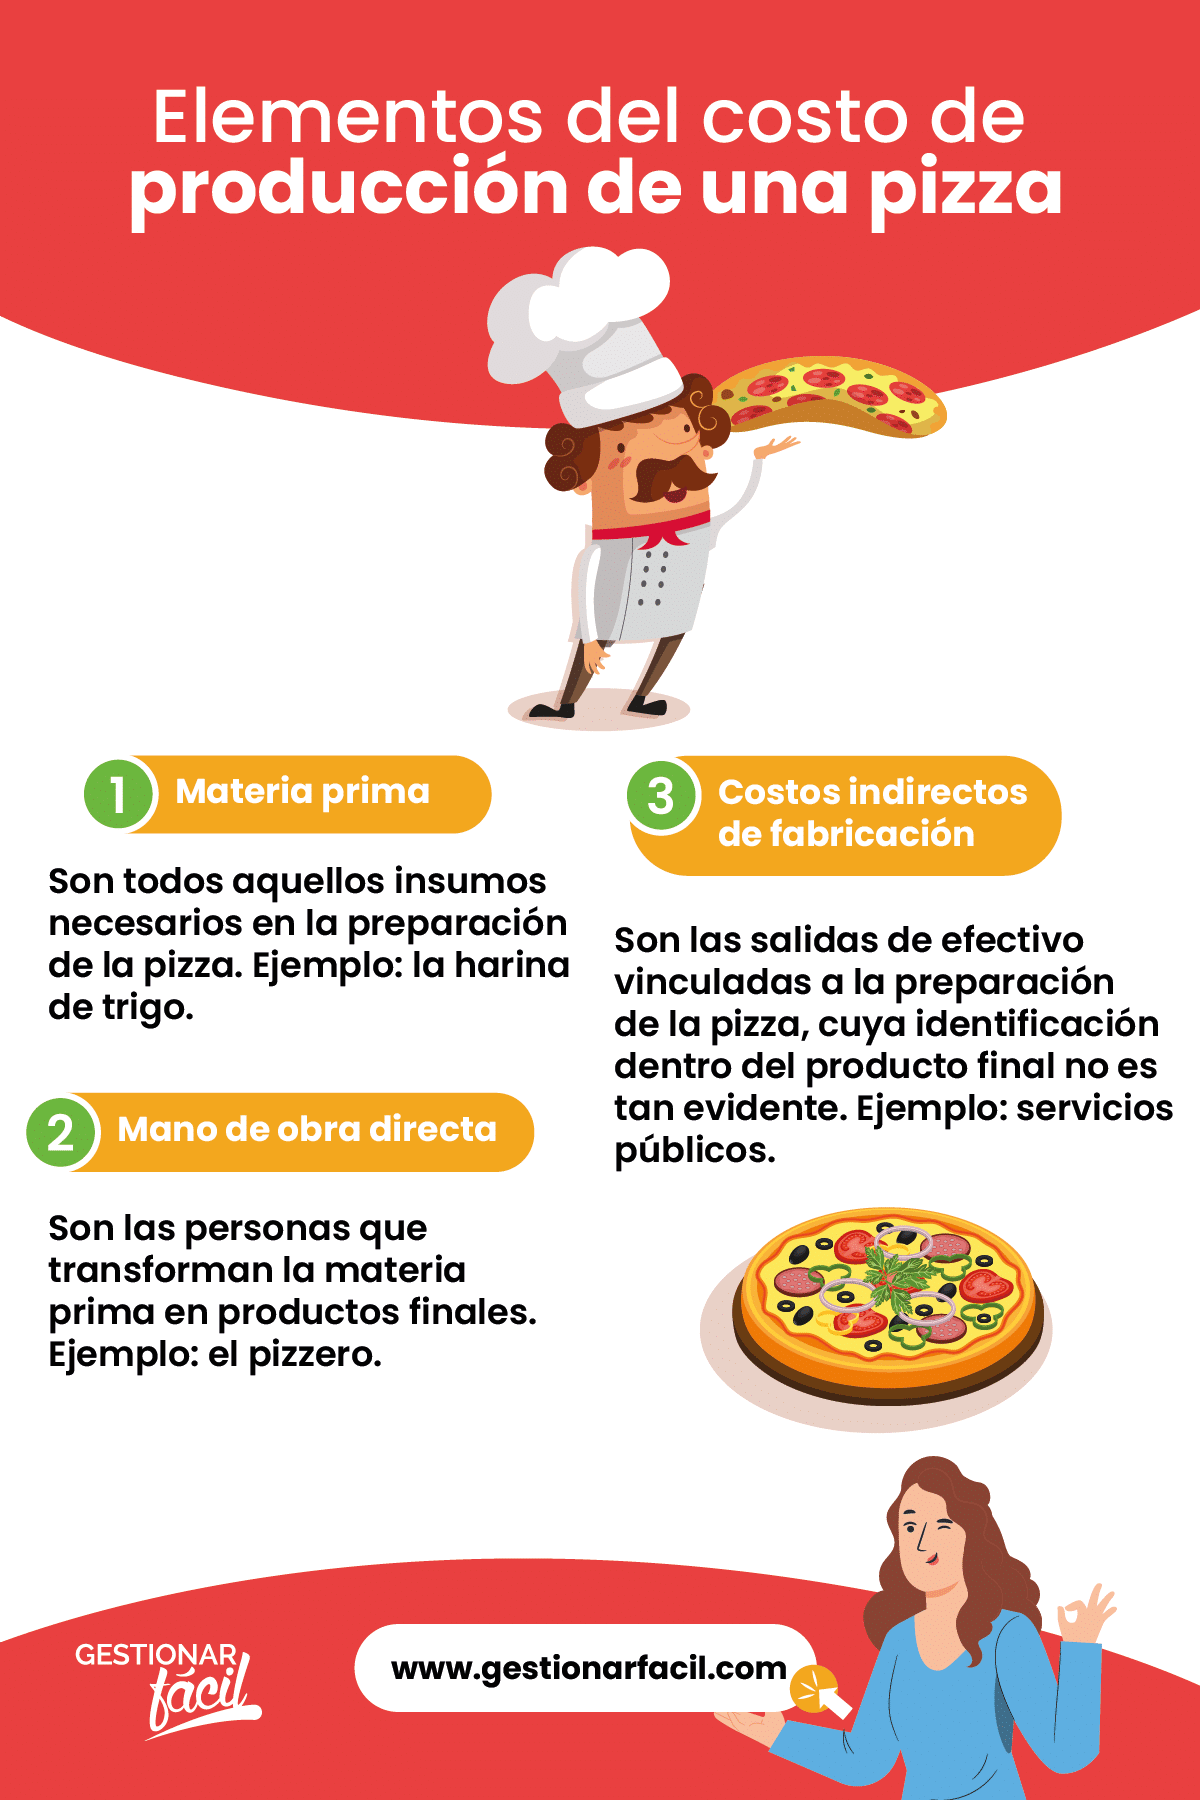 Elementos del costo de producción de una pizza.